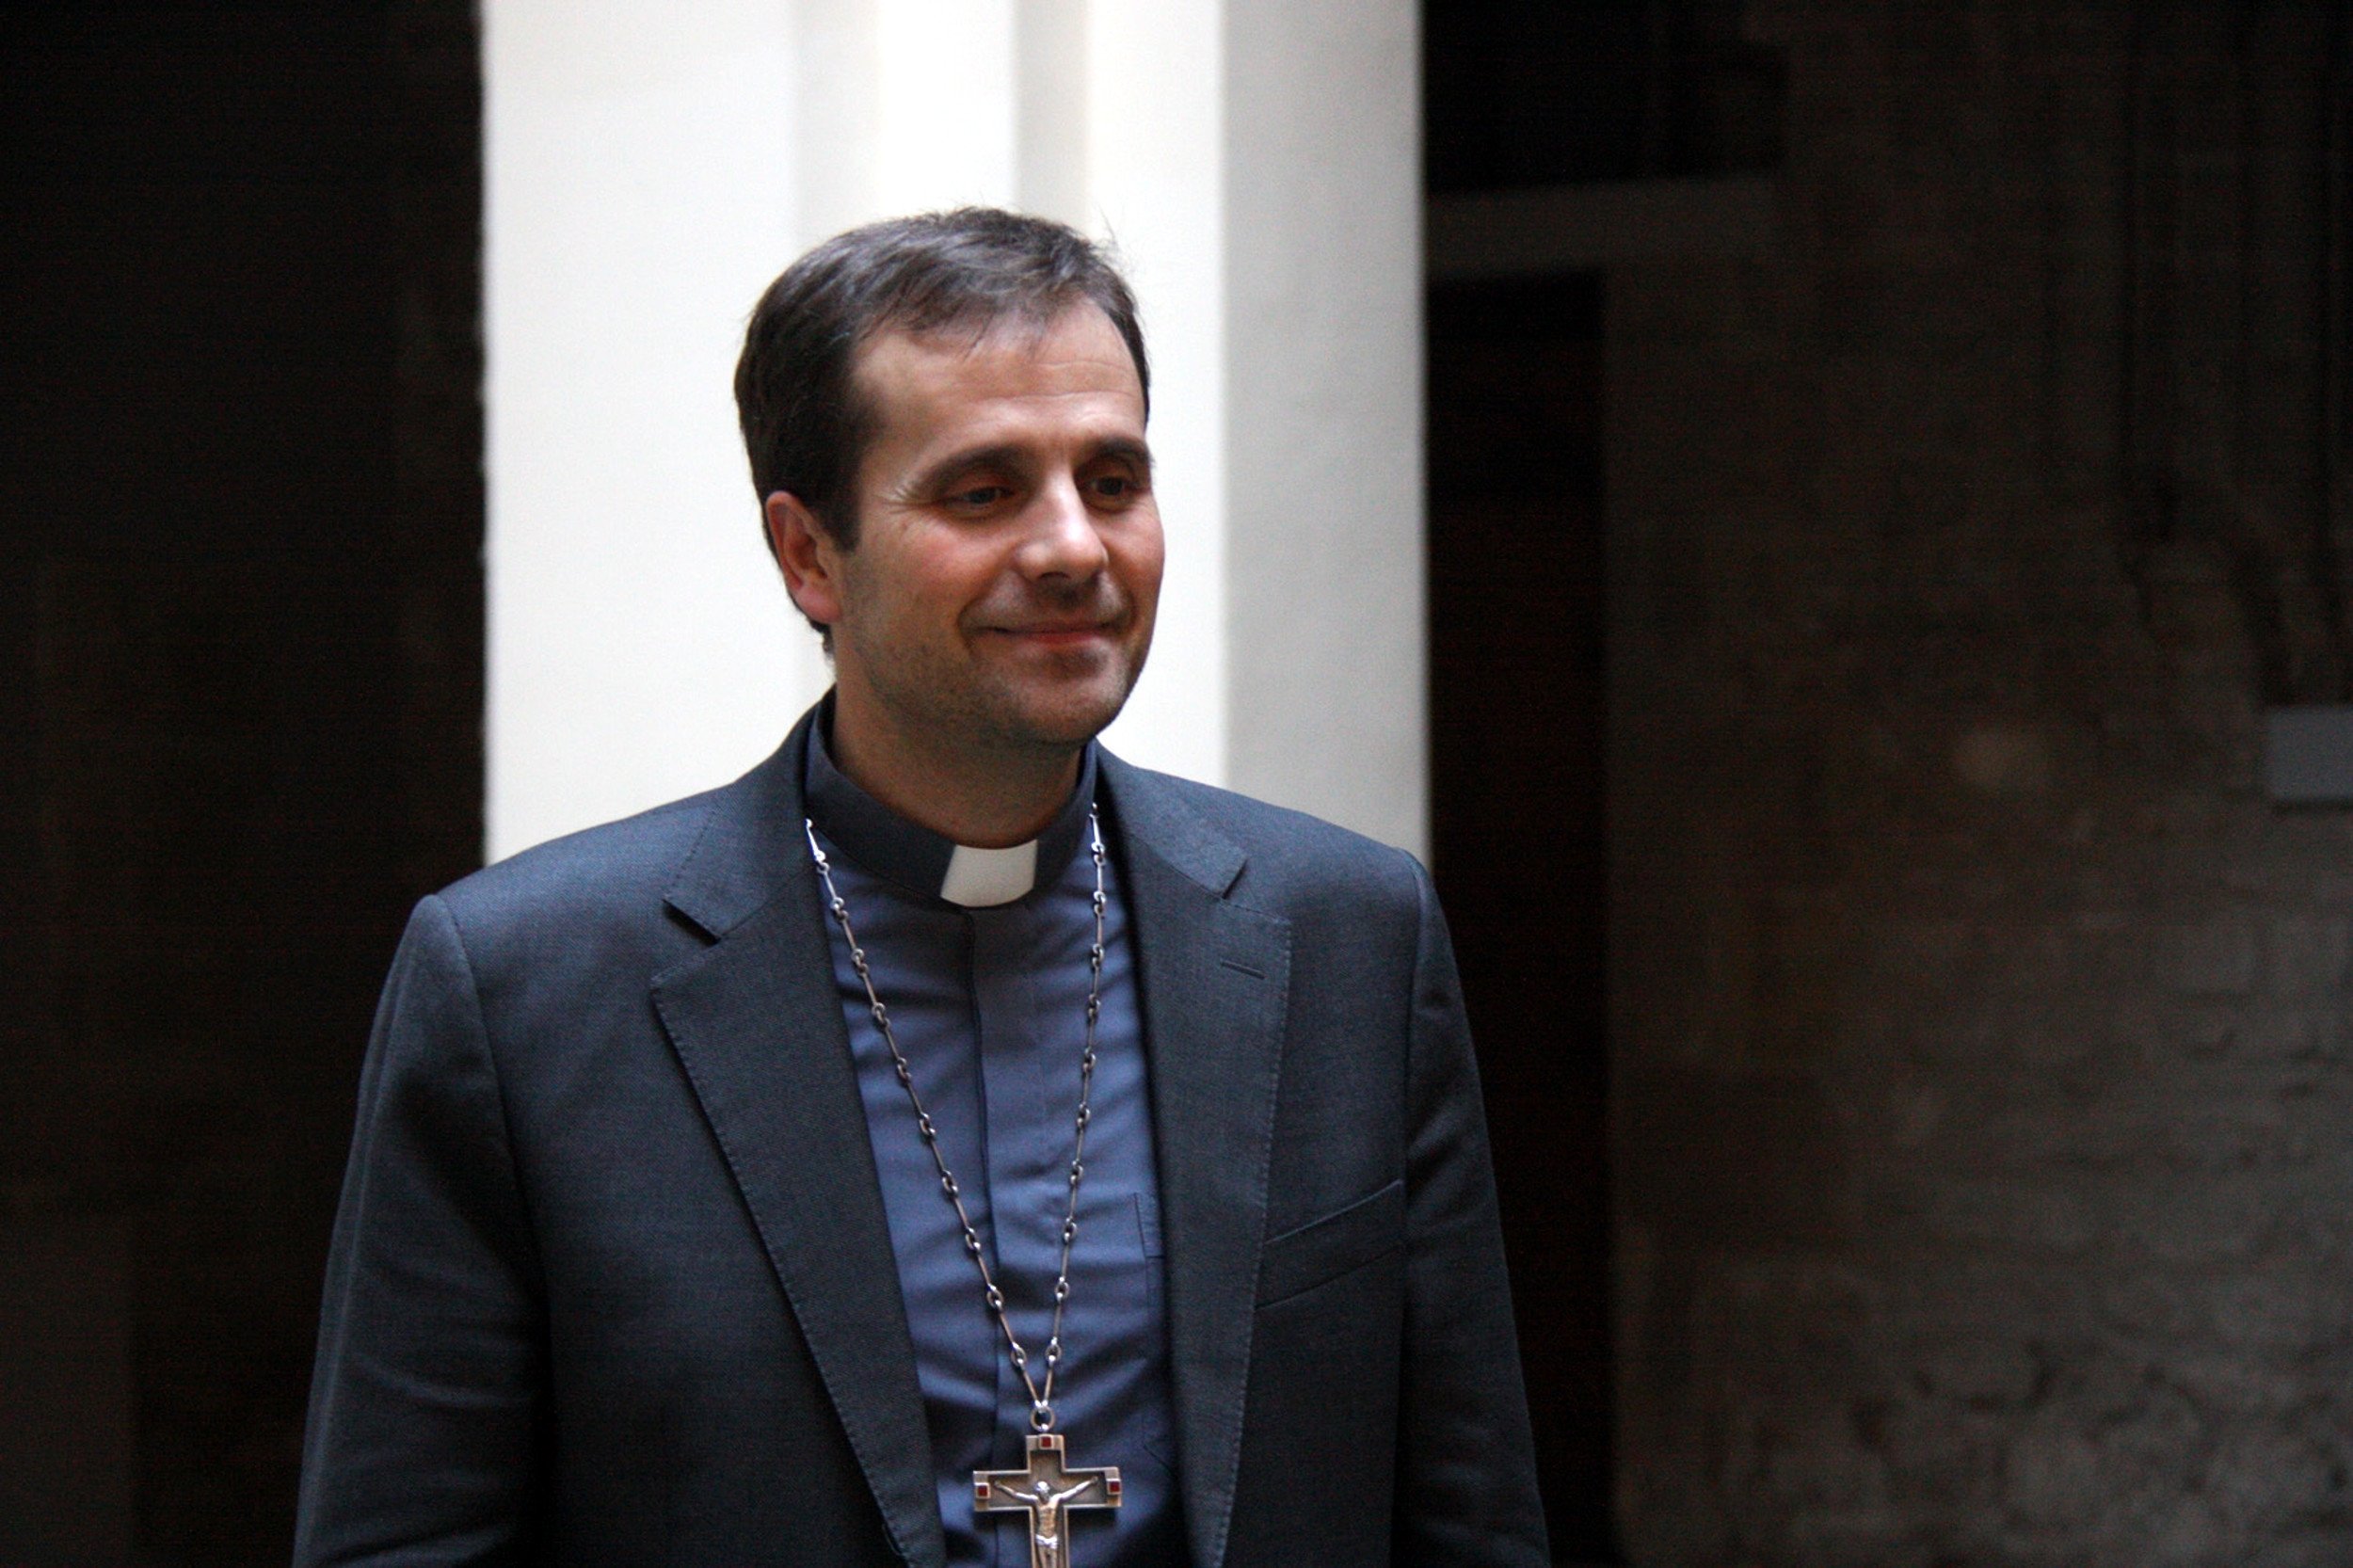 El obispo de Solsona quiere prohibir los actos laicos en las iglesias de su diócesis